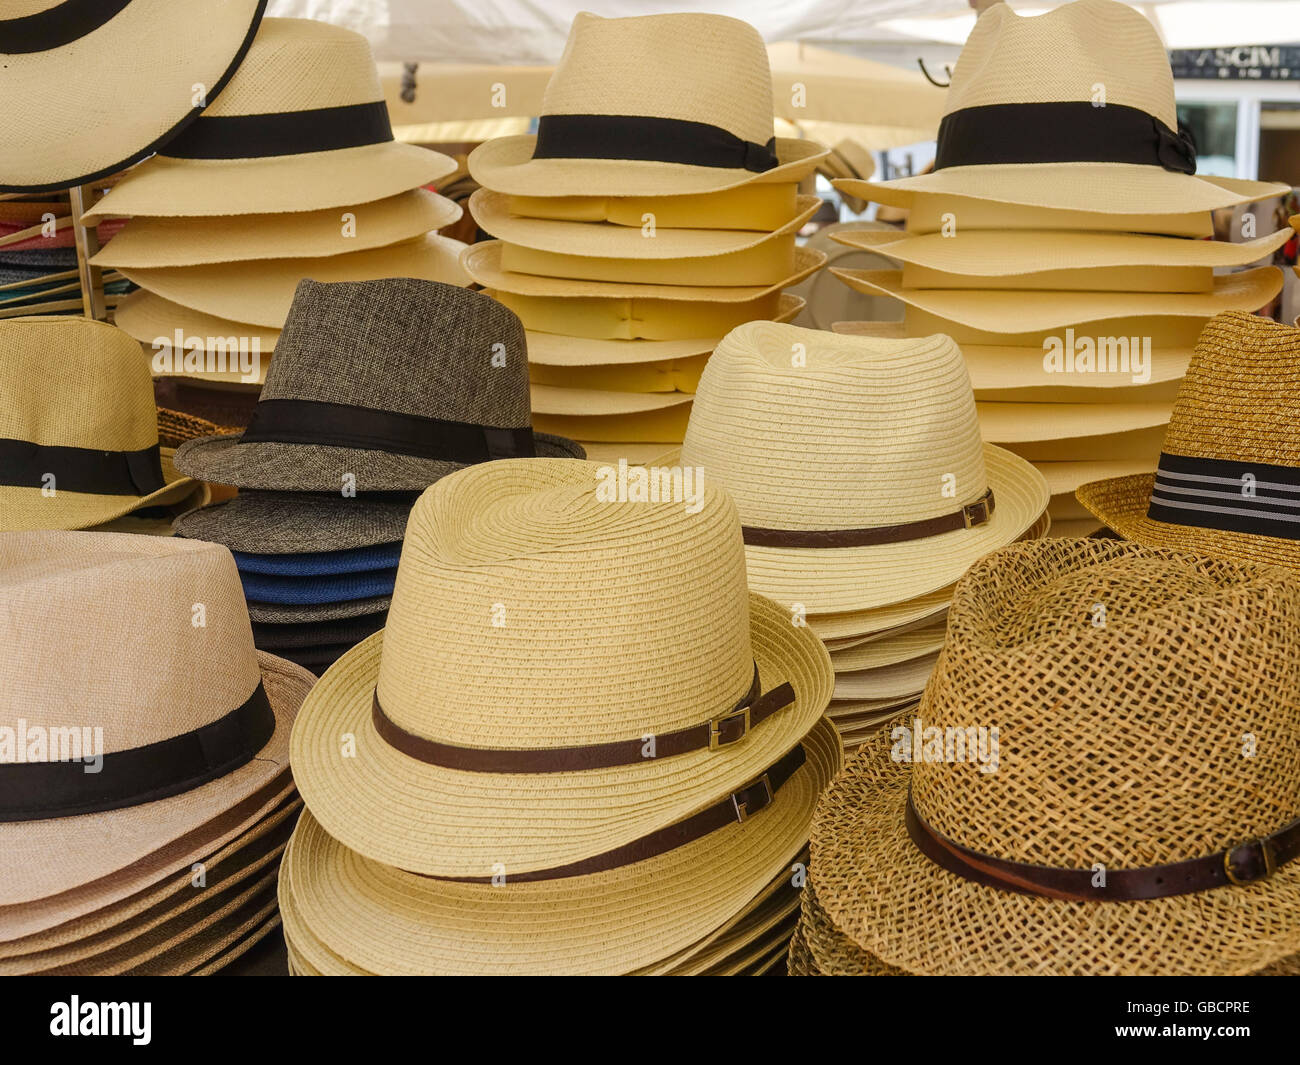 Cappelli italiani immagini e fotografie stock ad alta risoluzione - Alamy